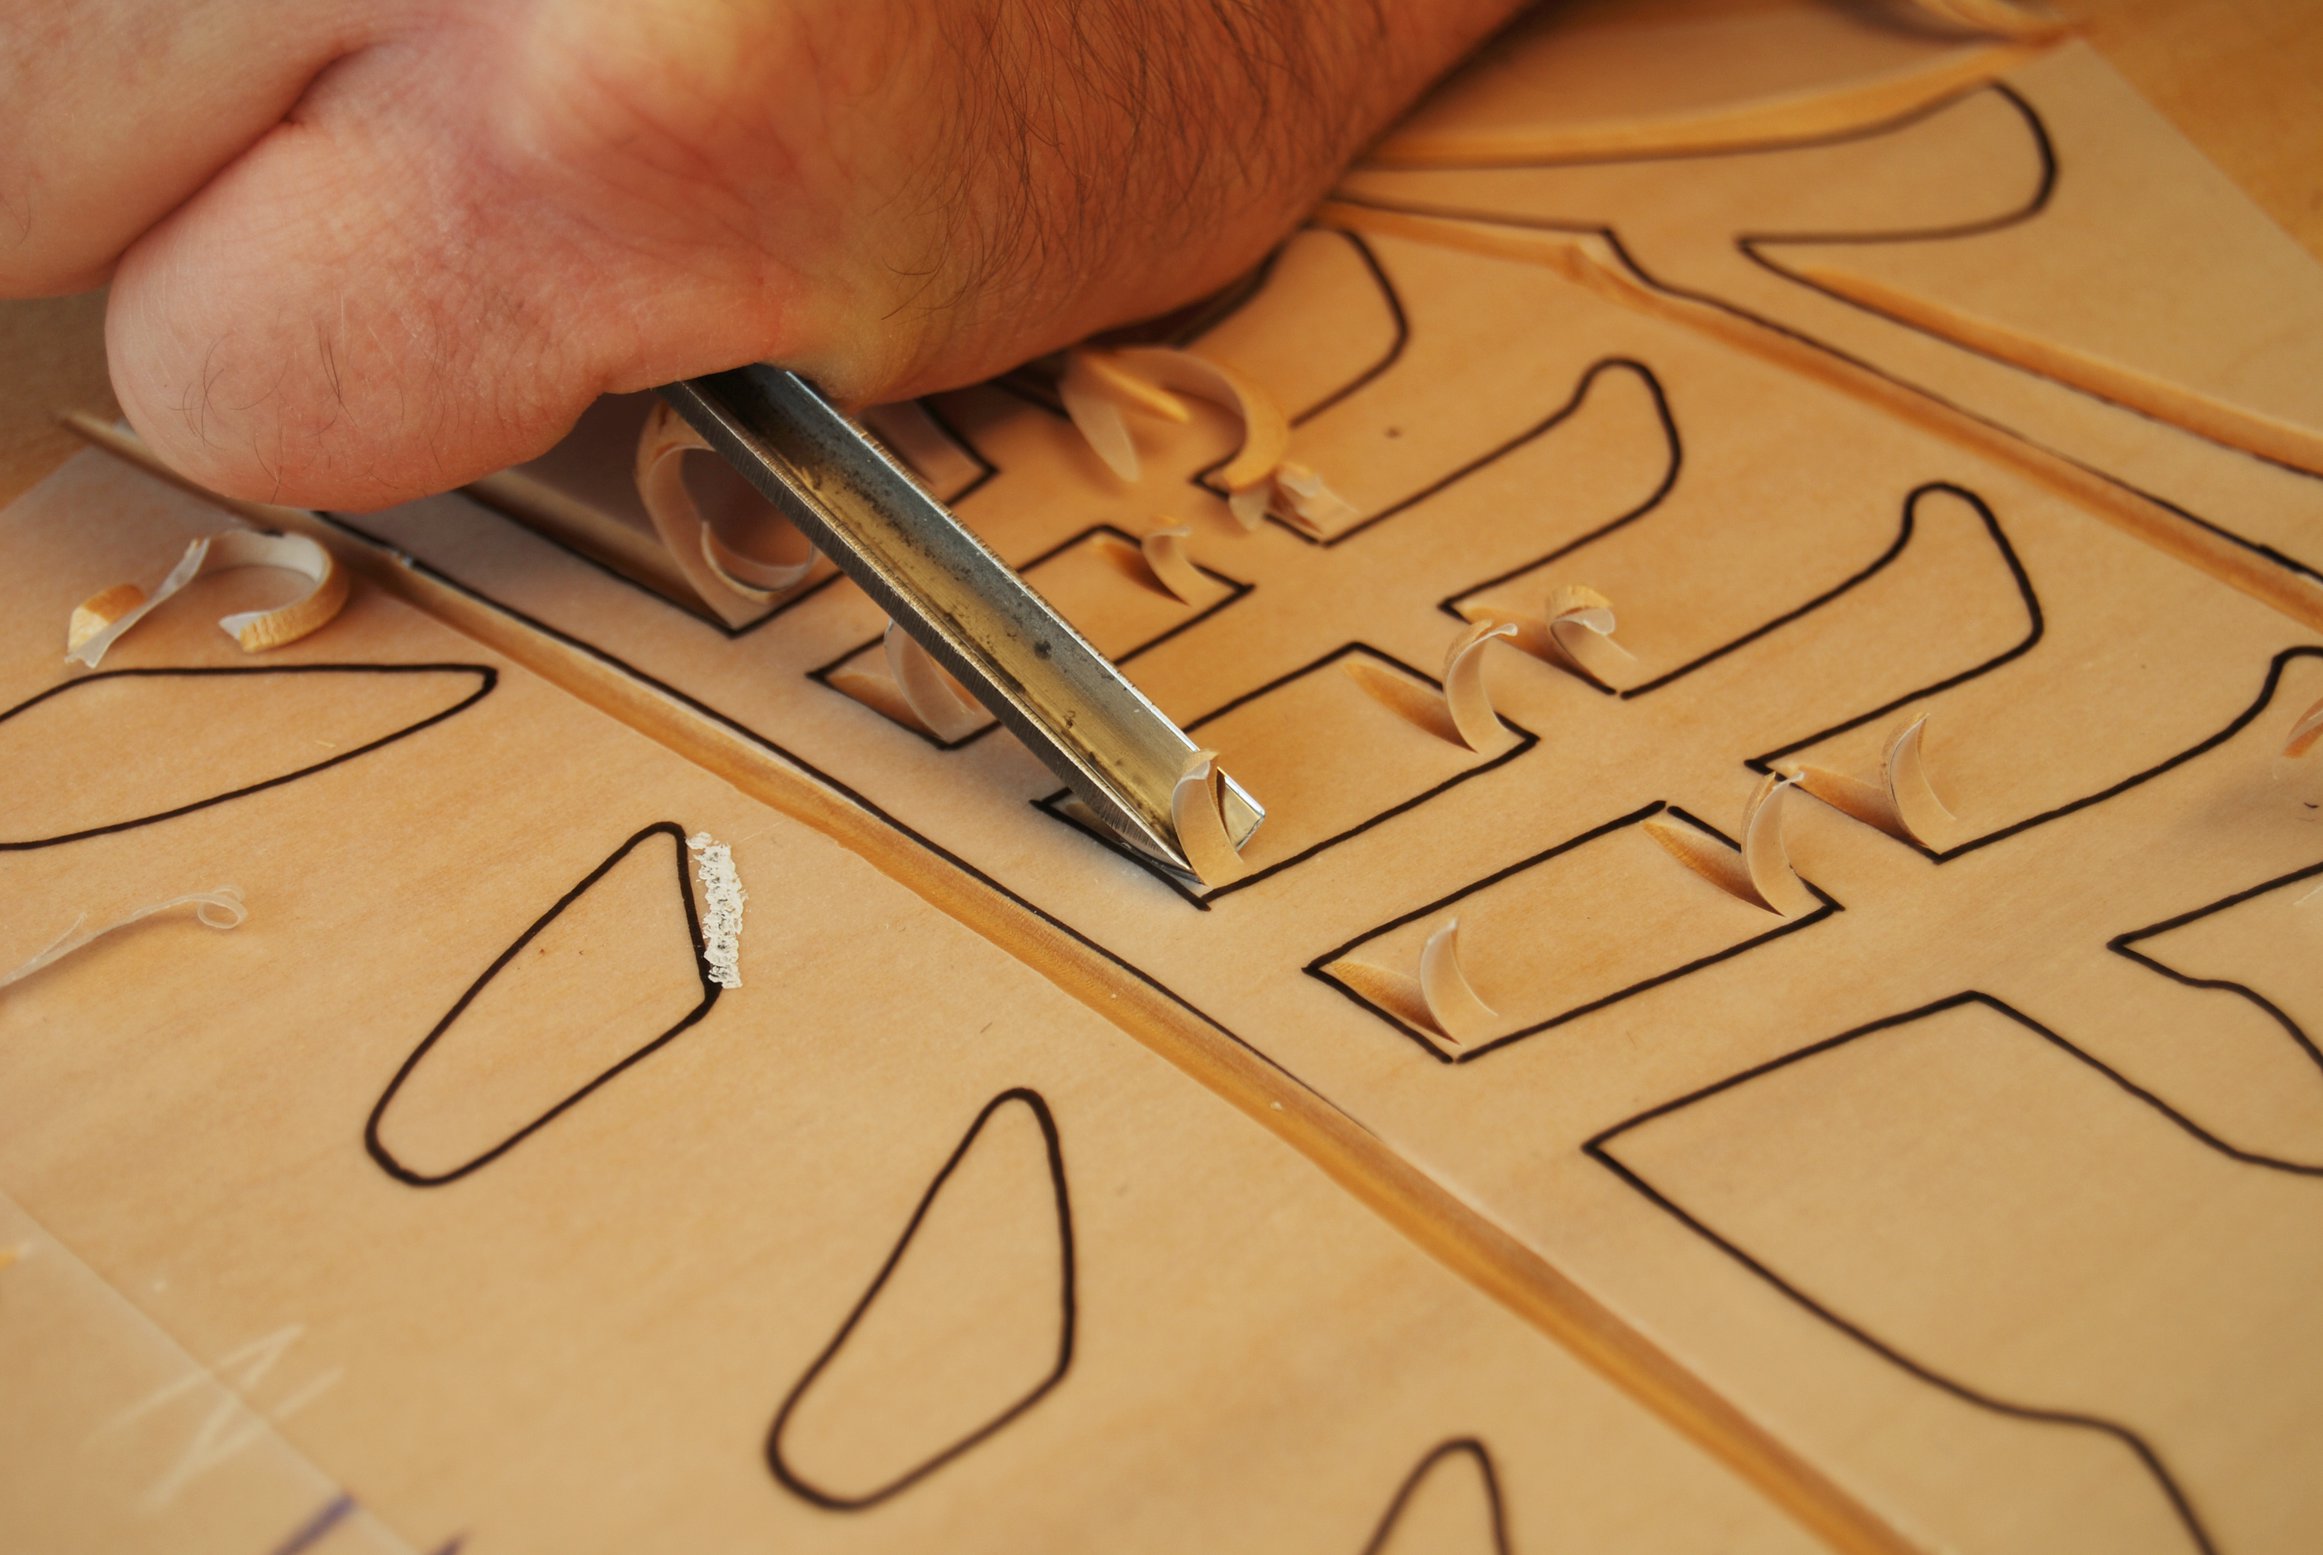 Kỹ thuật khắc trên gỗ căn bản là điều đầu tiên mà những người mới học khắc gỗ cần phải nắm vững. Với sự tập trung và kiên trì, bạn sẽ có thể tạo ra những tác phẩm độc đáo và tuyệt vời. Hãy cùng khám phá kỹ thuật khắc trên gỗ căn bản để thấy được sự tiềm năng và sáng tạo không giới hạn.